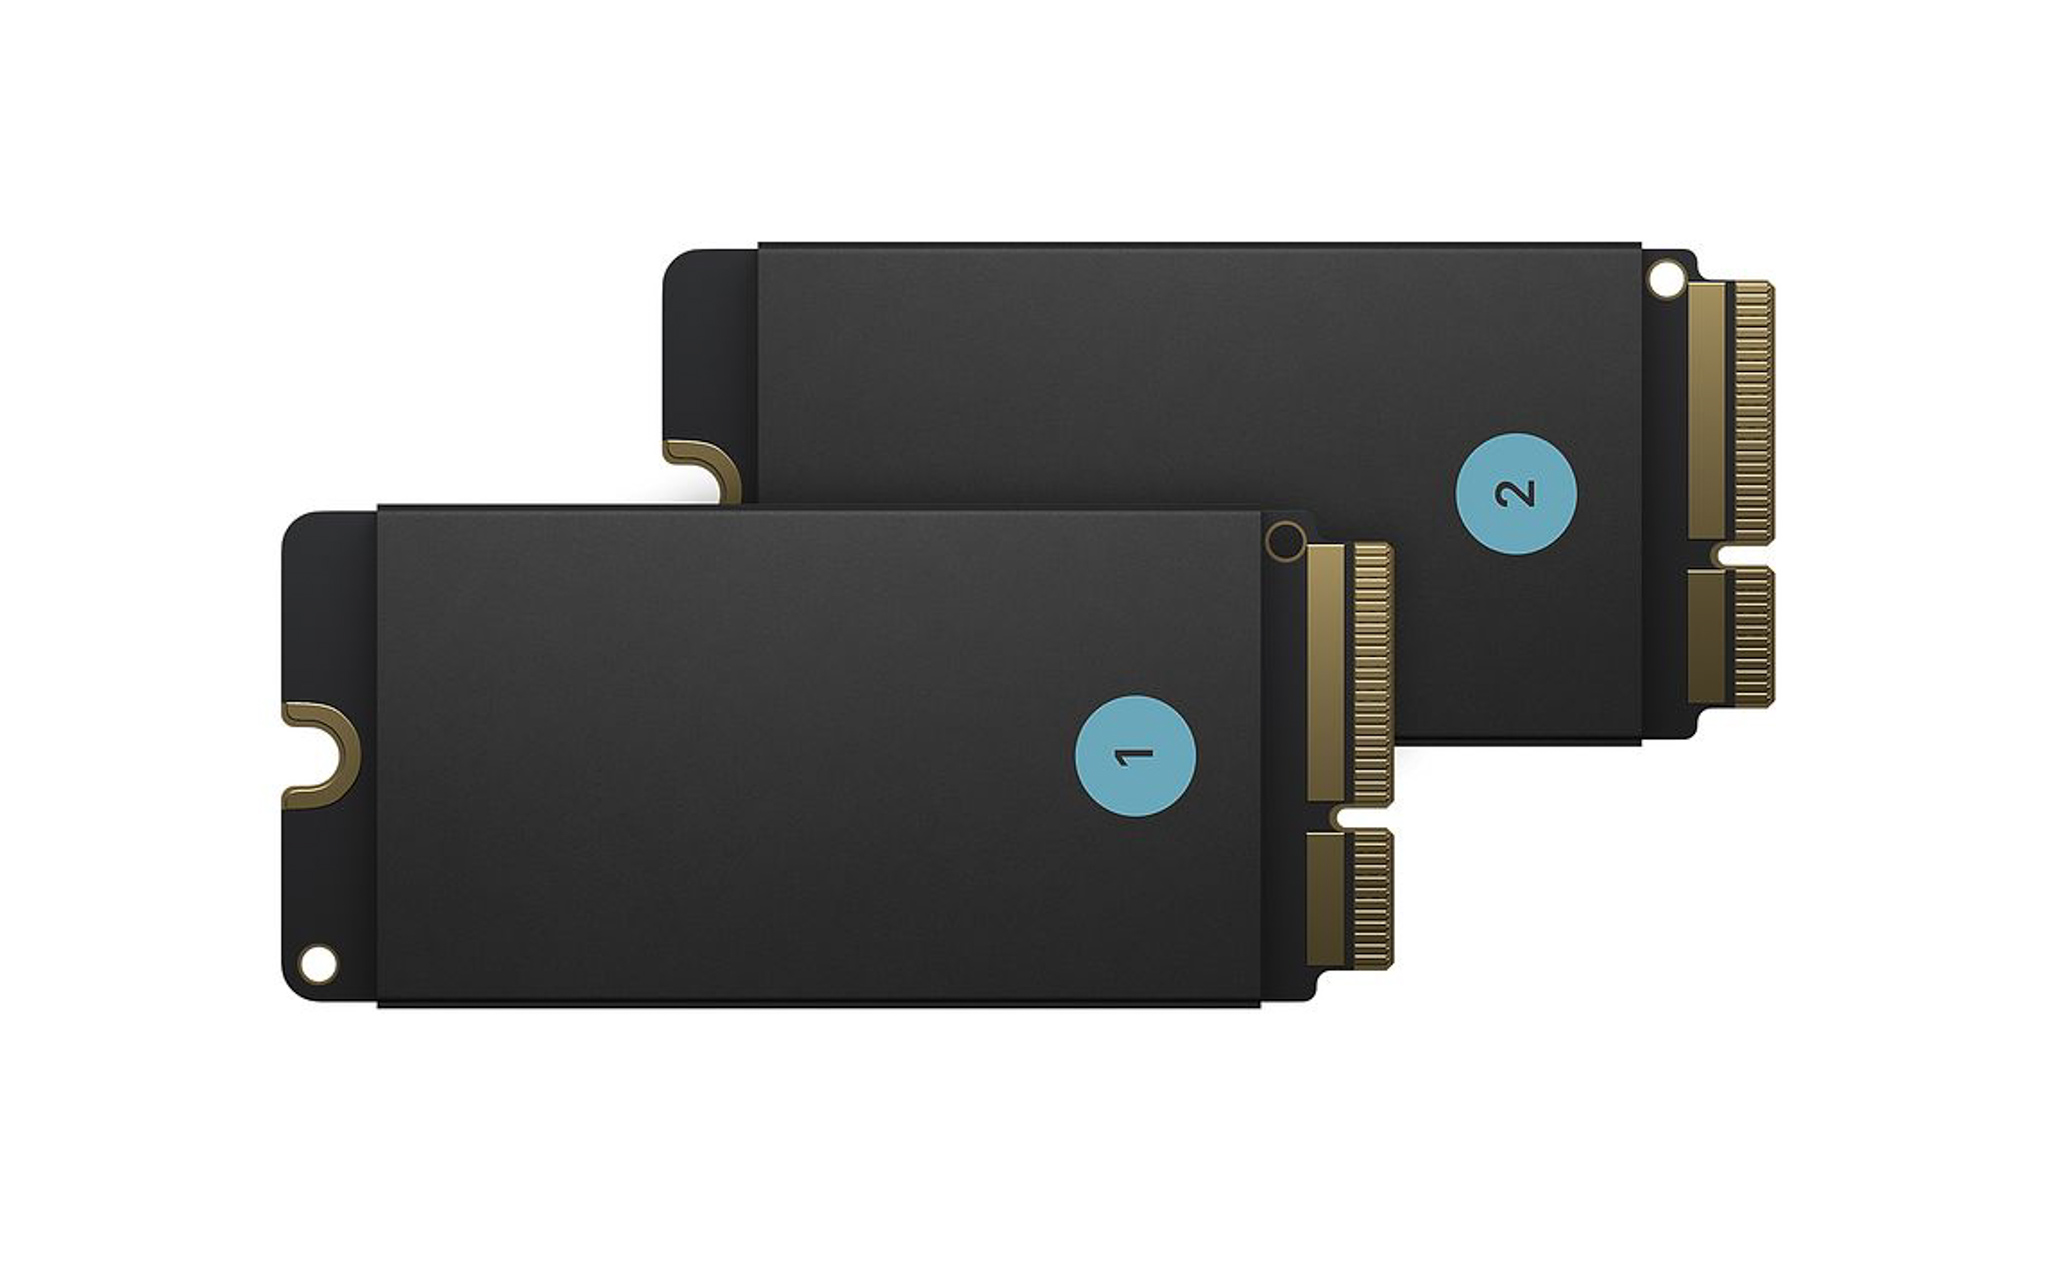 Thanh SSD 8TB cho Mac Pro có giá gần 60 triệu đồng